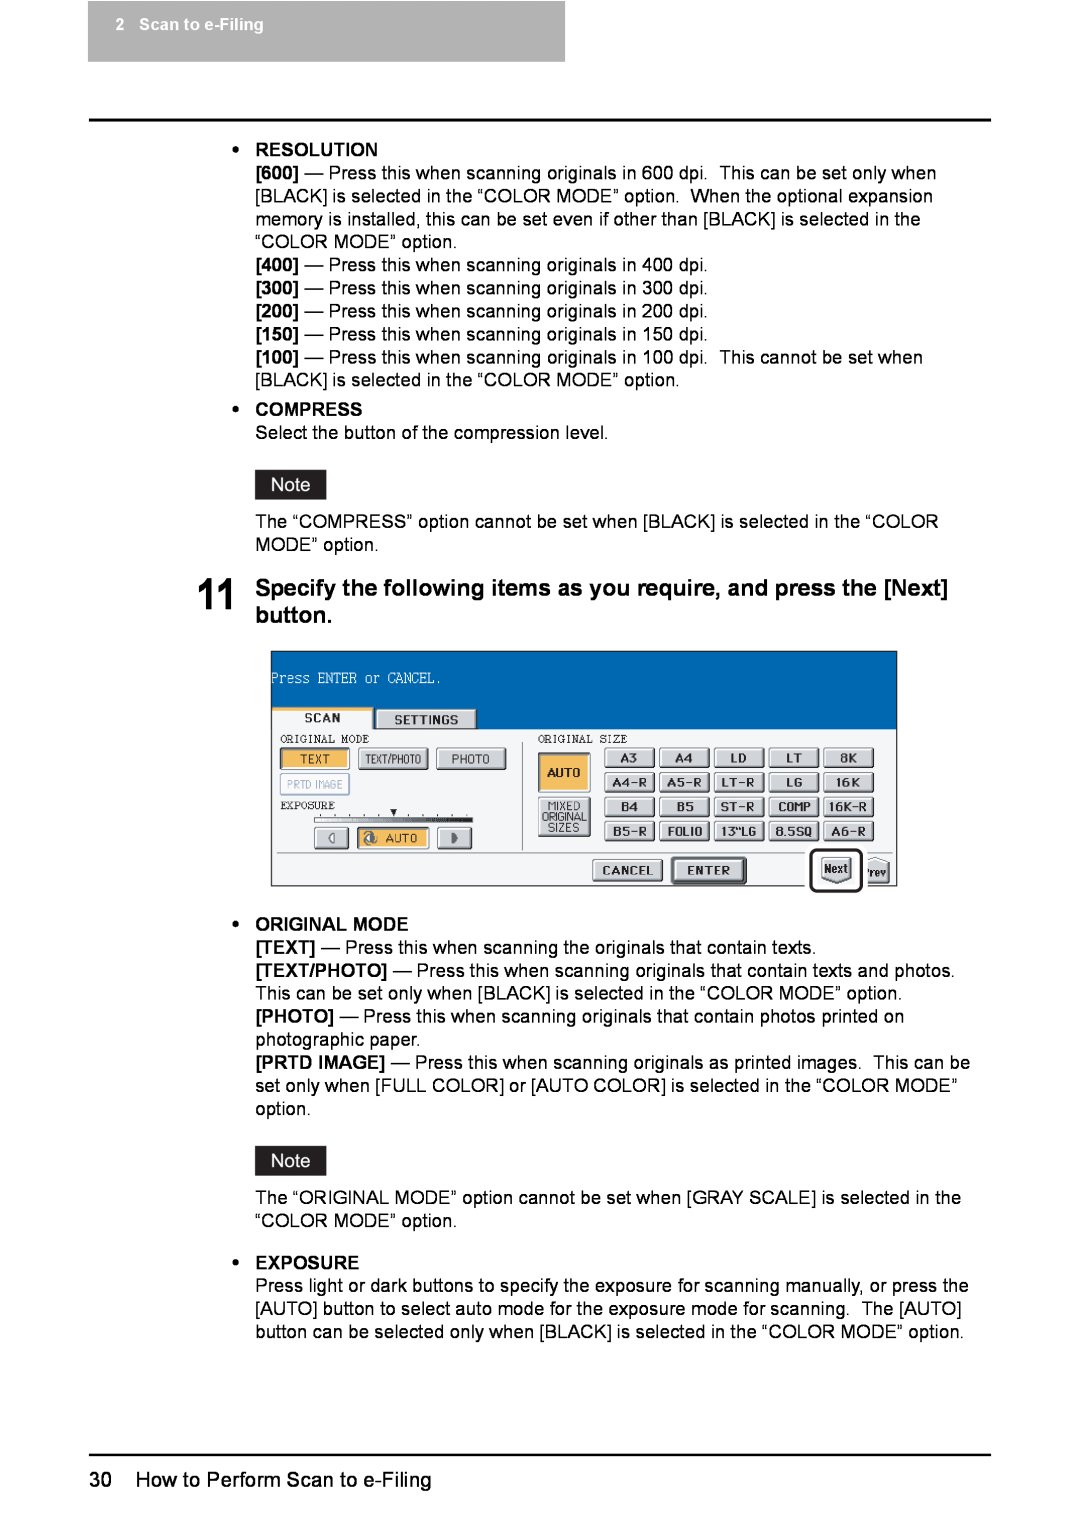 Toshiba 3510C, 3500C, 2500C manual How to Perform Scan to e-Filing, y RESOLUTION, y COMPRESS, y ORIGINAL MODE, y EXPOSURE 